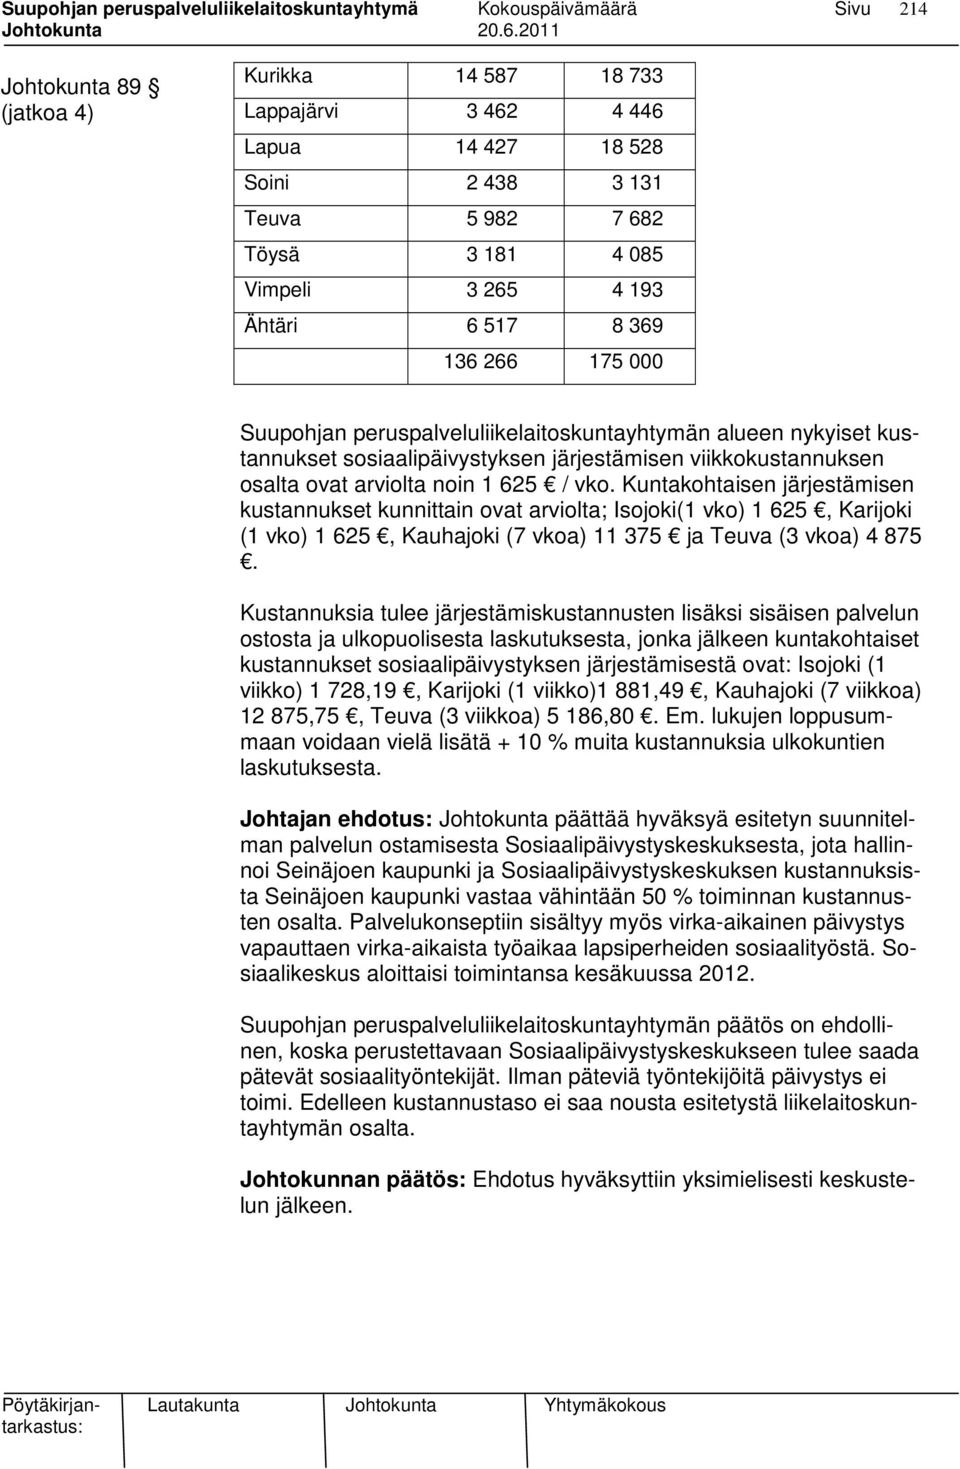 Kuntakohtaisen järjestämisen kustannukset kunnittain ovat arviolta; Isojoki(1 vko) 1 625, Karijoki (1 vko) 1 625, Kauhajoki (7 vkoa) 11 375 ja Teuva (3 vkoa) 4 875.